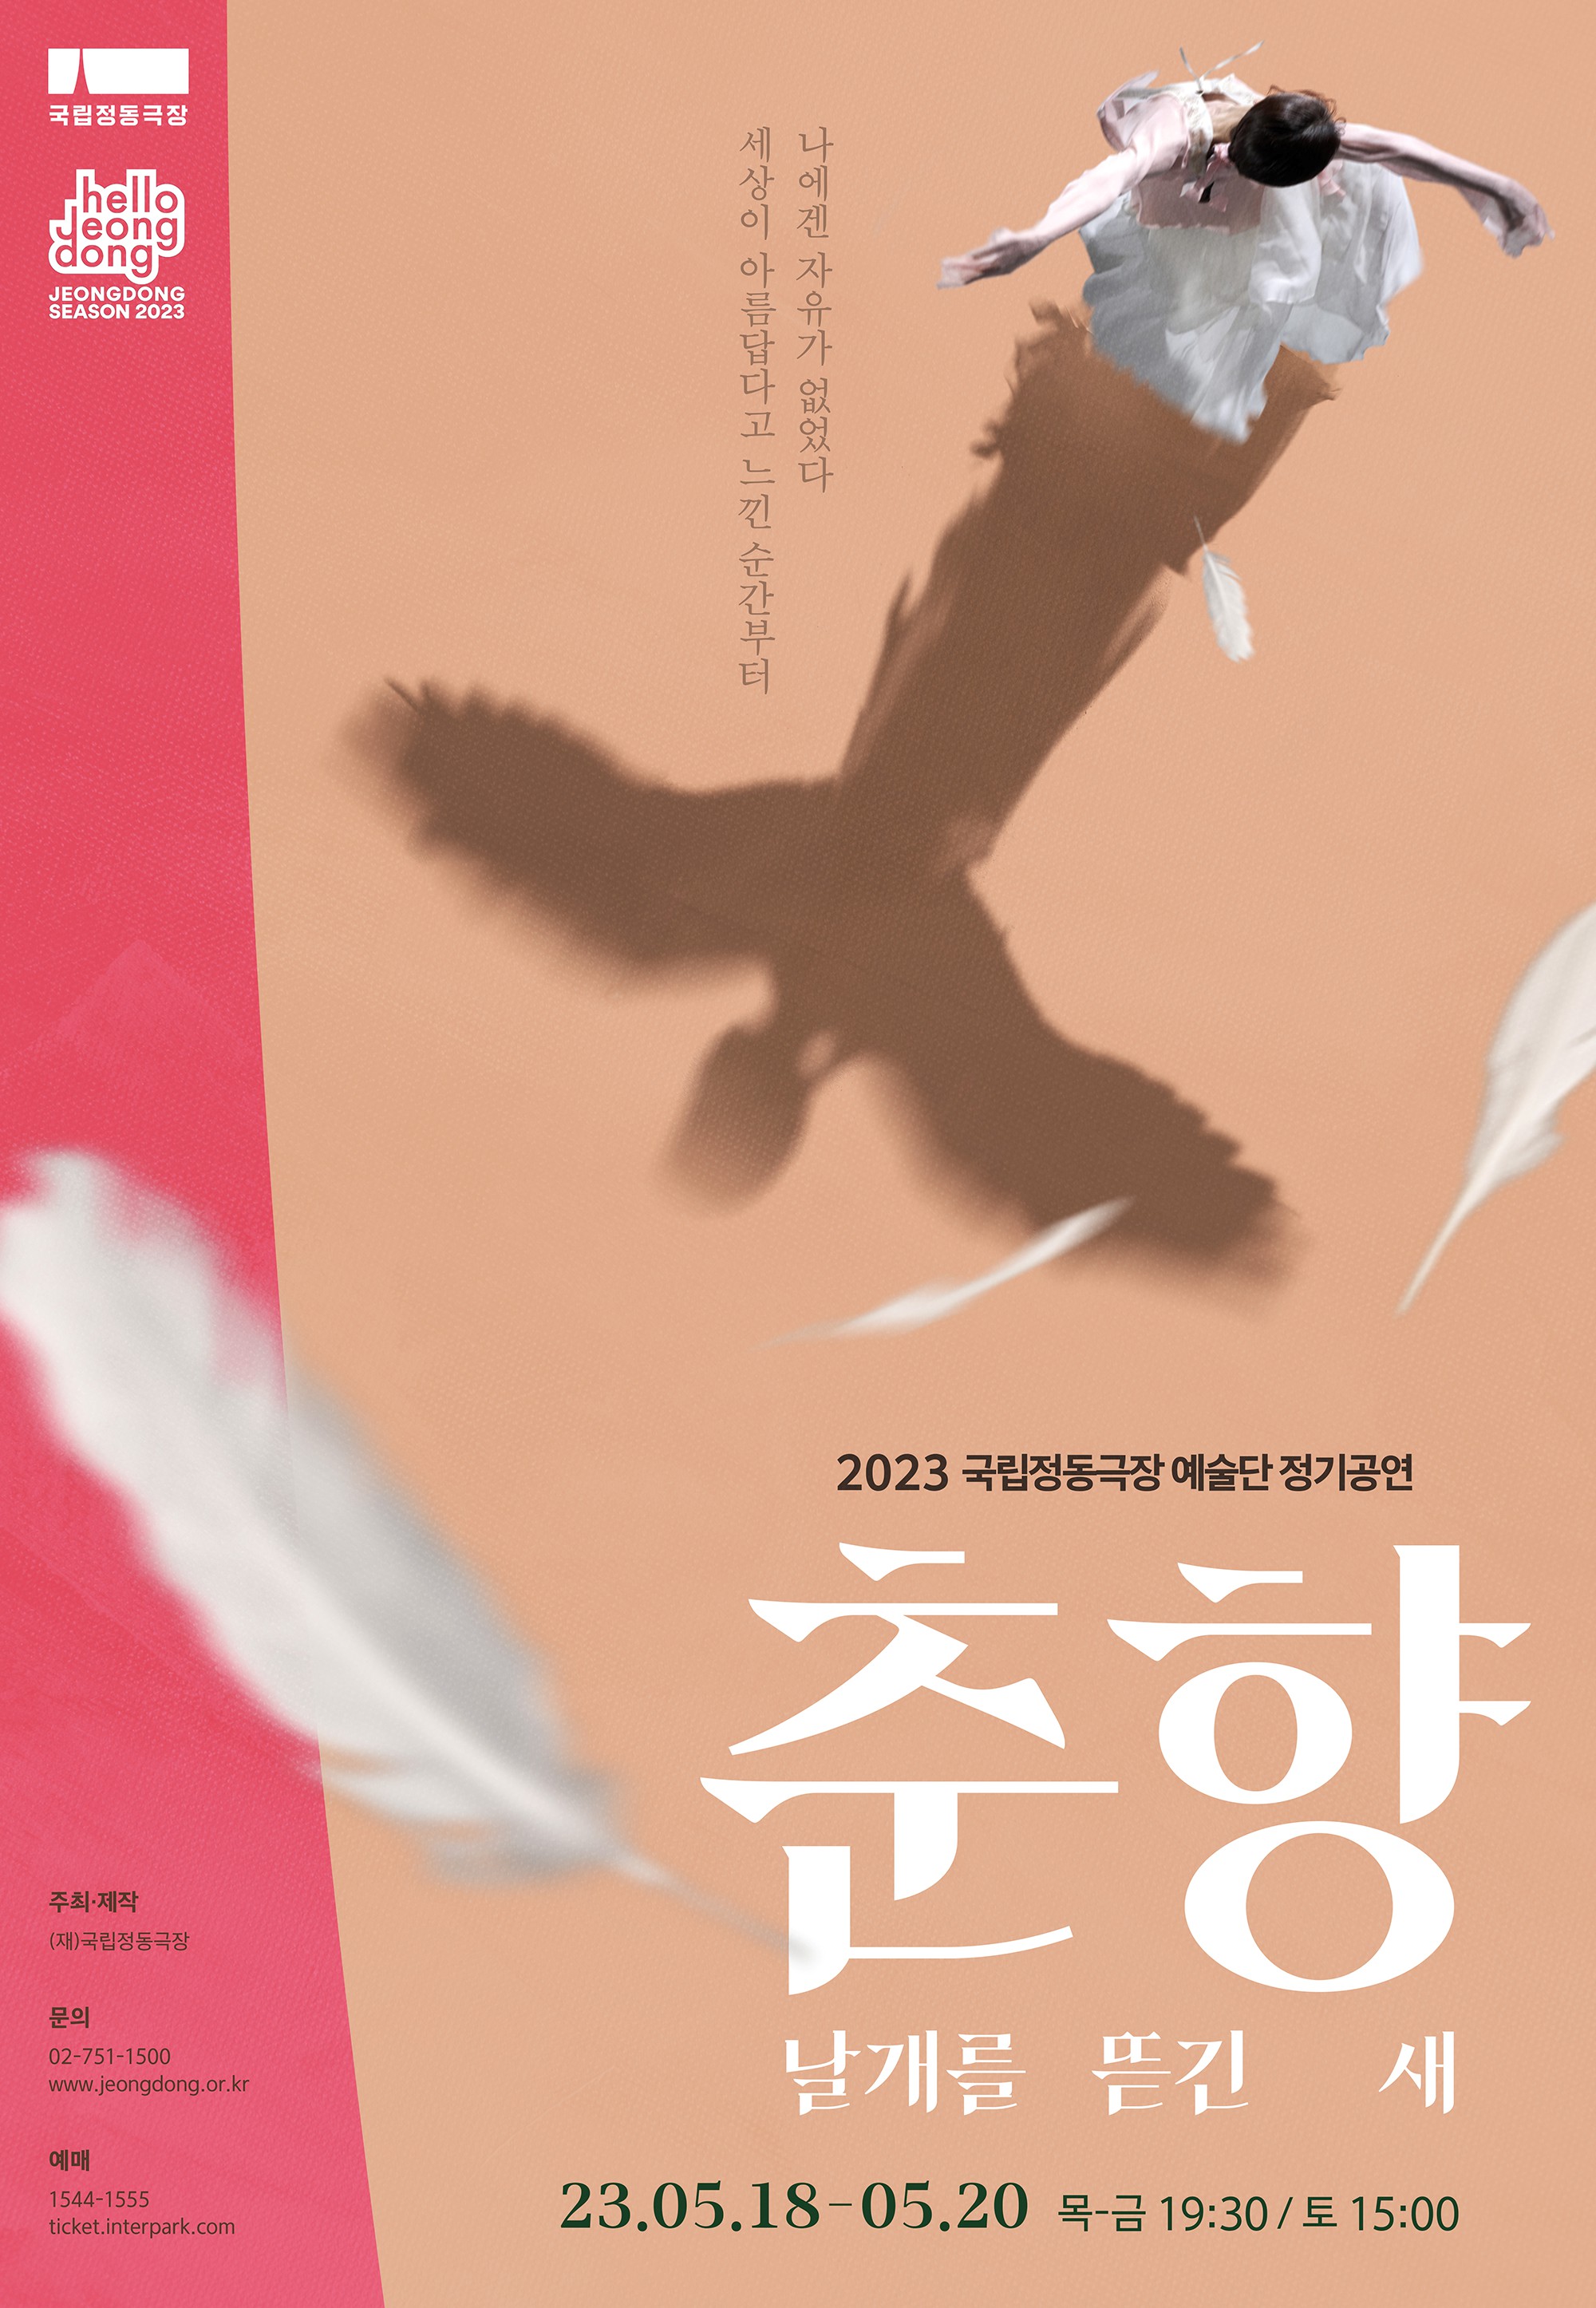 국립정동극장 올해 첫 정기공연 '춘향: 날개를 뜯긴 새' 5월 공연